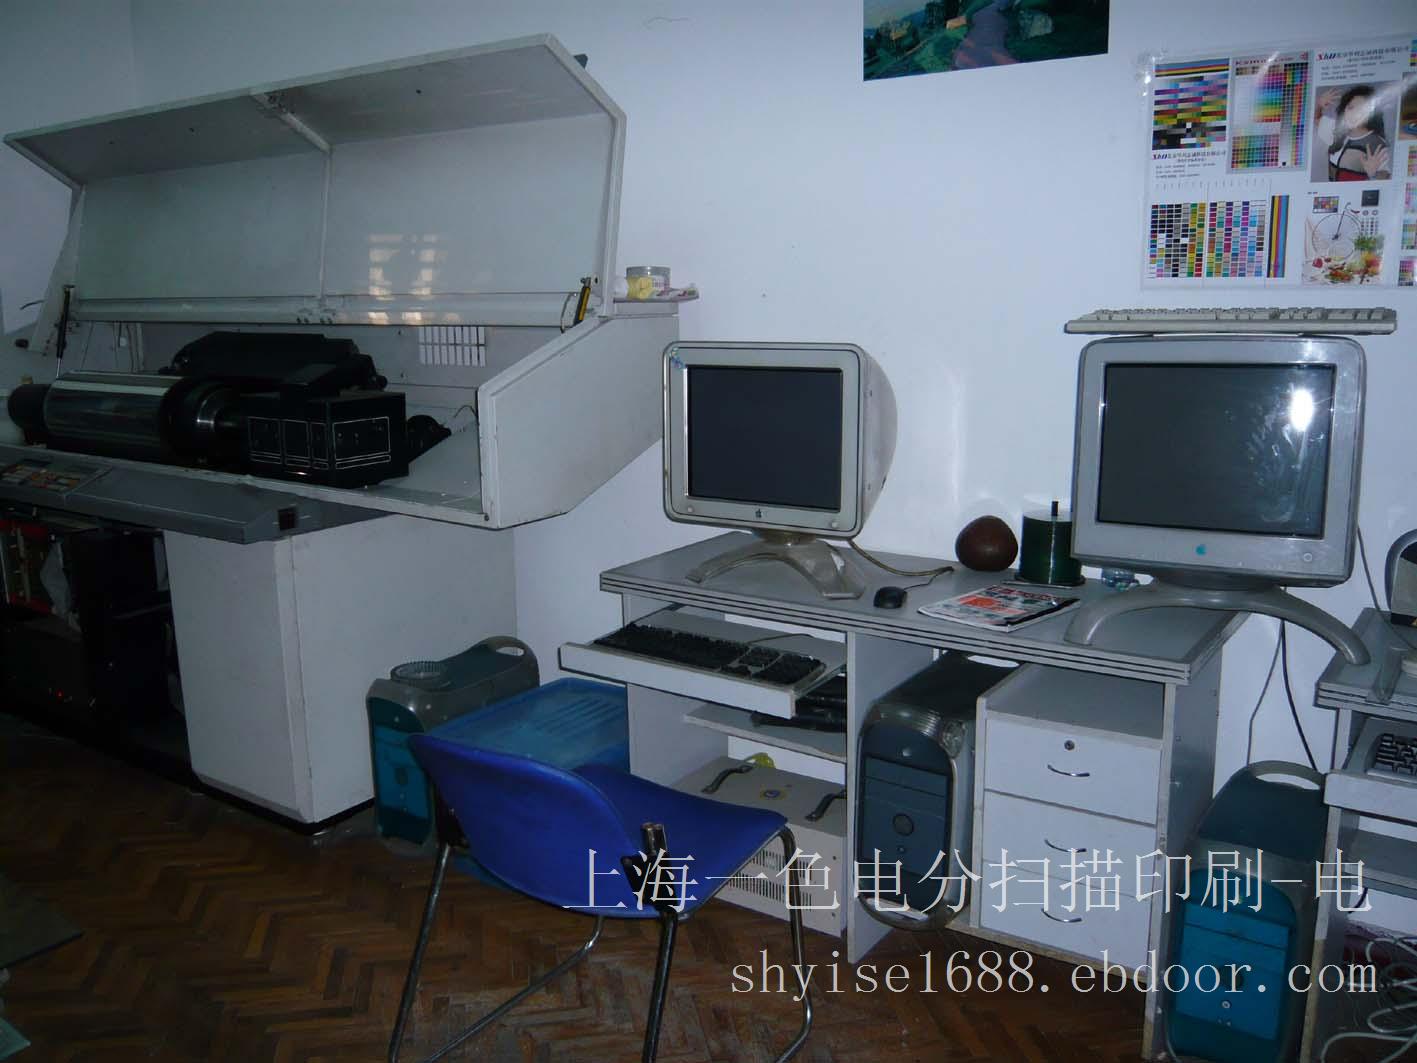 上海电分扫描公司-闸北照片电分扫描价格-闸北电分扫描公司